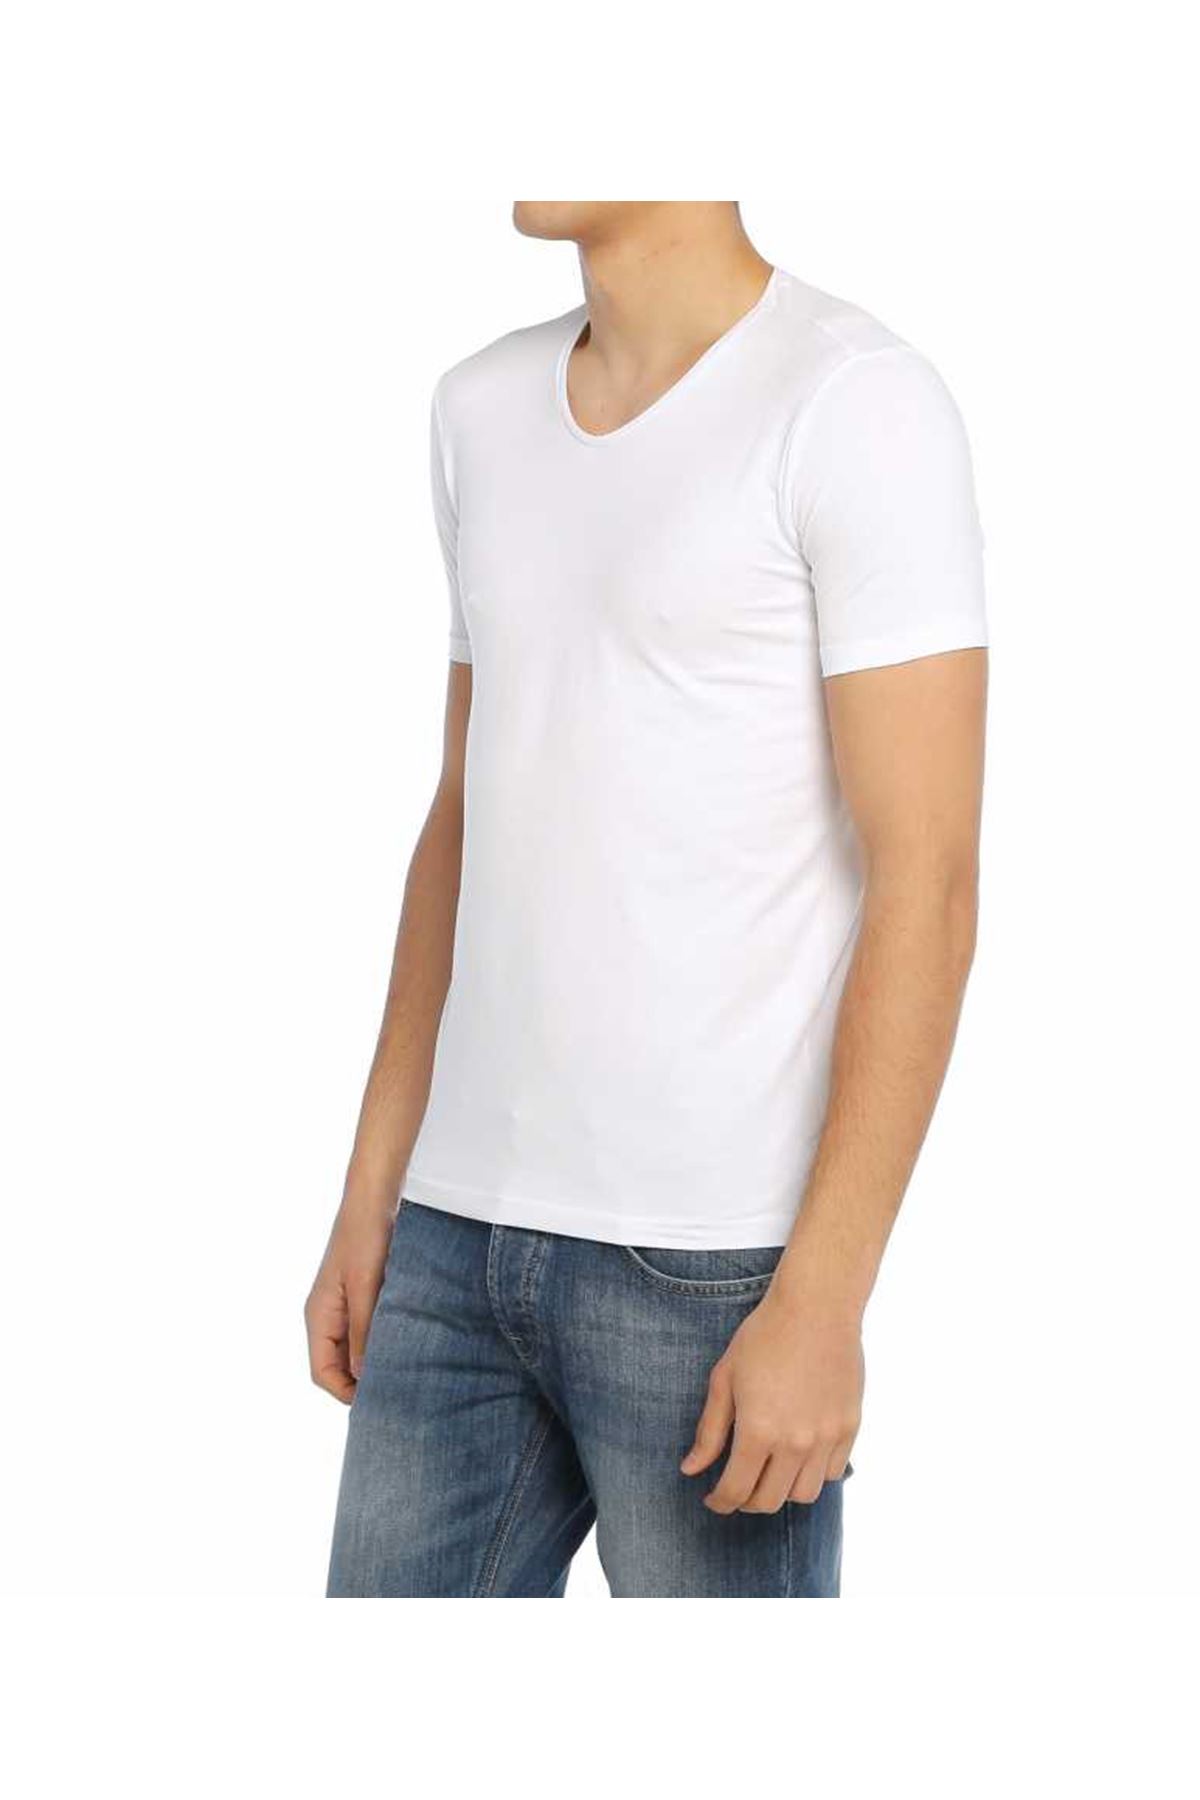 Erkek Kırık Beyaz Düz Yaka Basic Body Tişört 